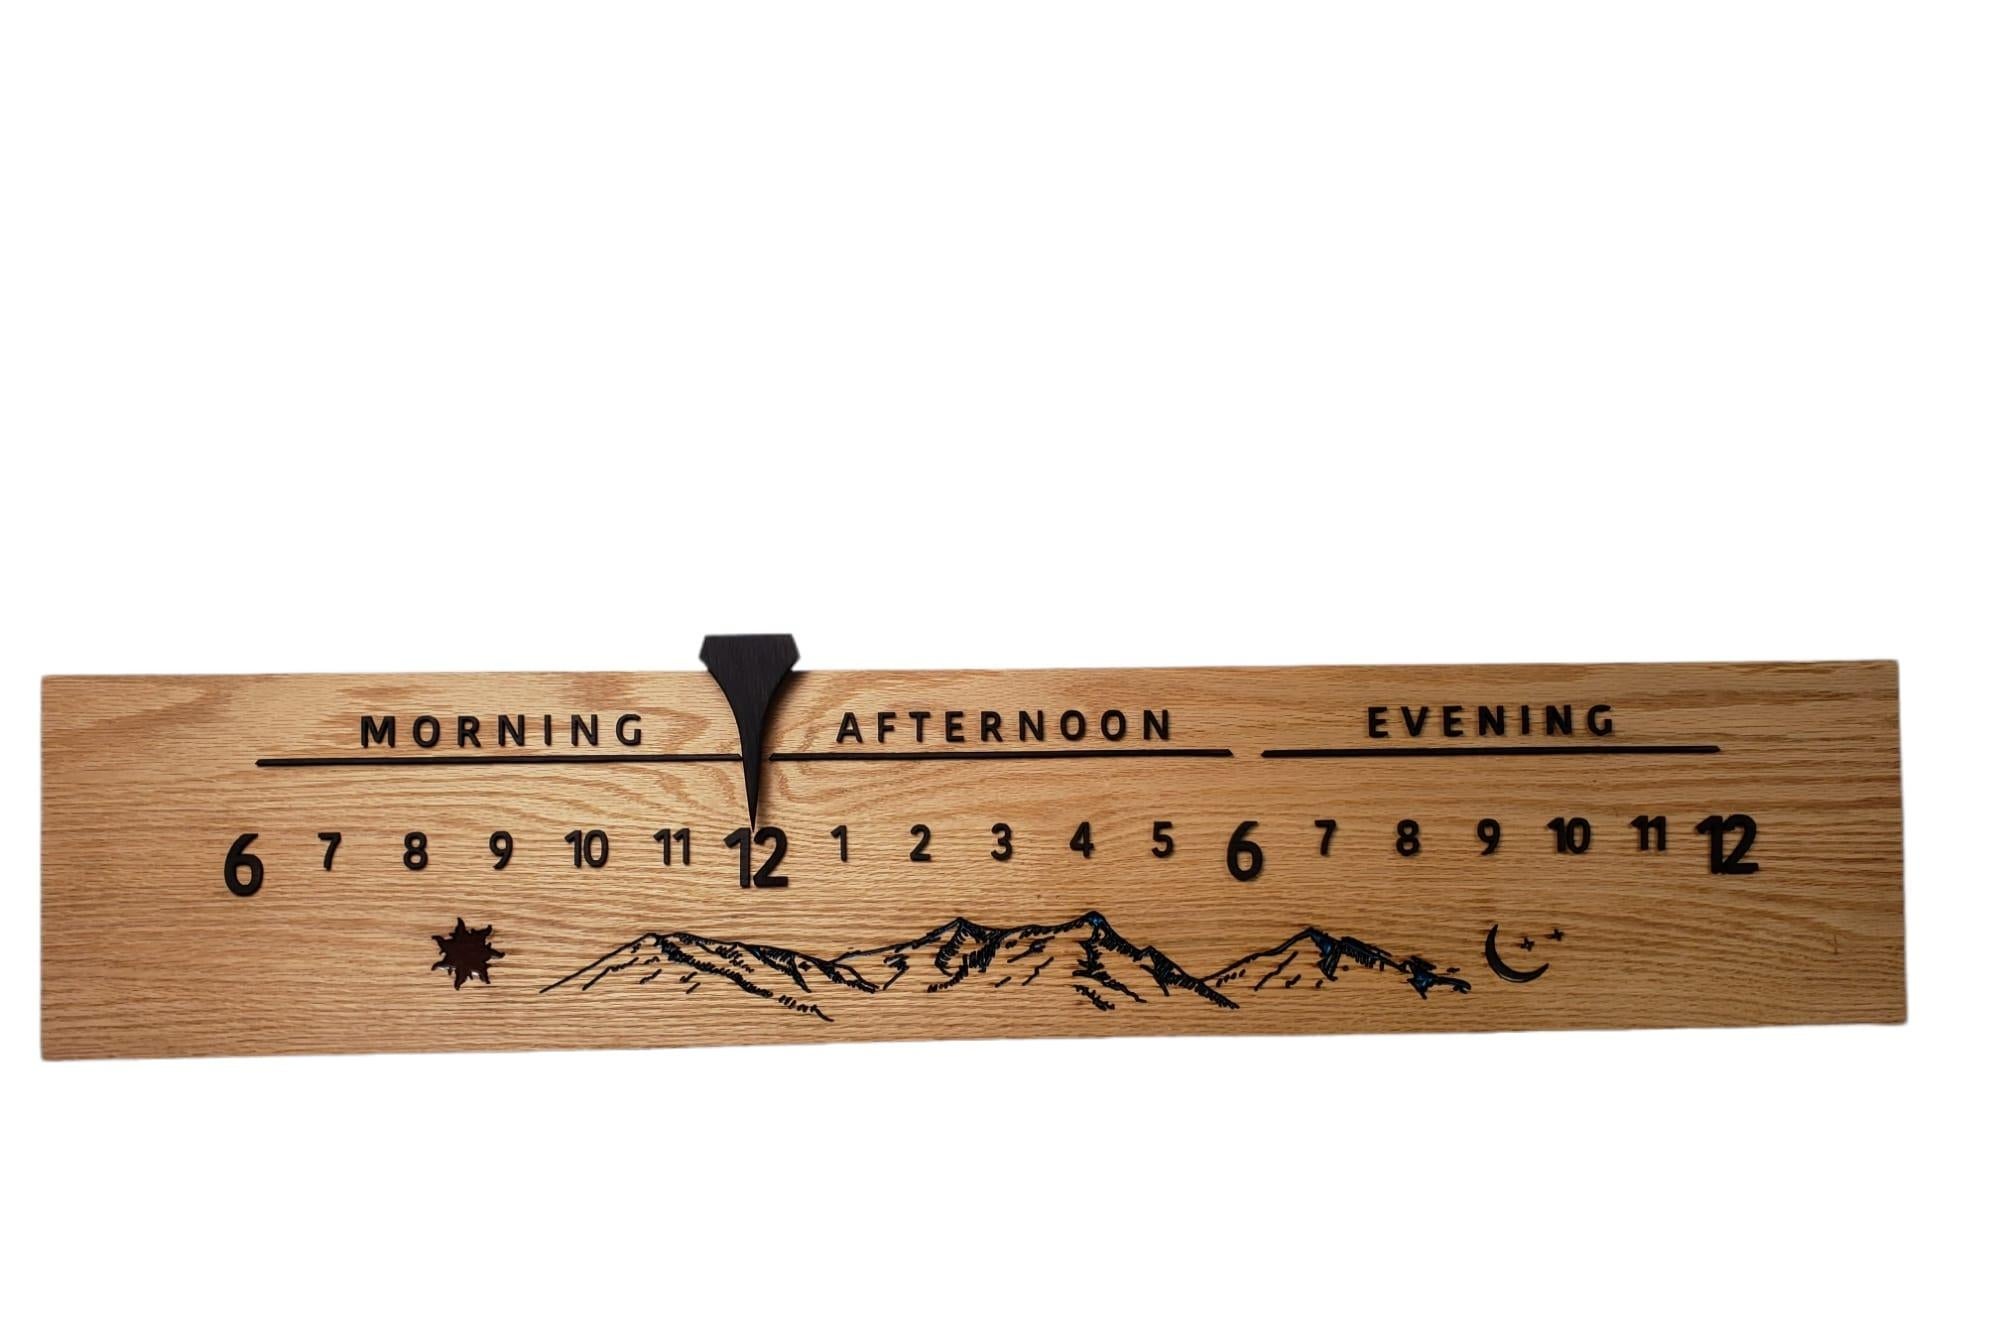 Mitchell ist eine lineare Uhr mit einem wunderschönen Eichenholz und einem einzigartigen Ziffernblatt, das mit Sonnen-, Berg- und Mondsymbolen versehen ist. 

Linear Clocks sind eine Erfindung von Linear Clockworks; diese Uhren zeigen die Zeit auf